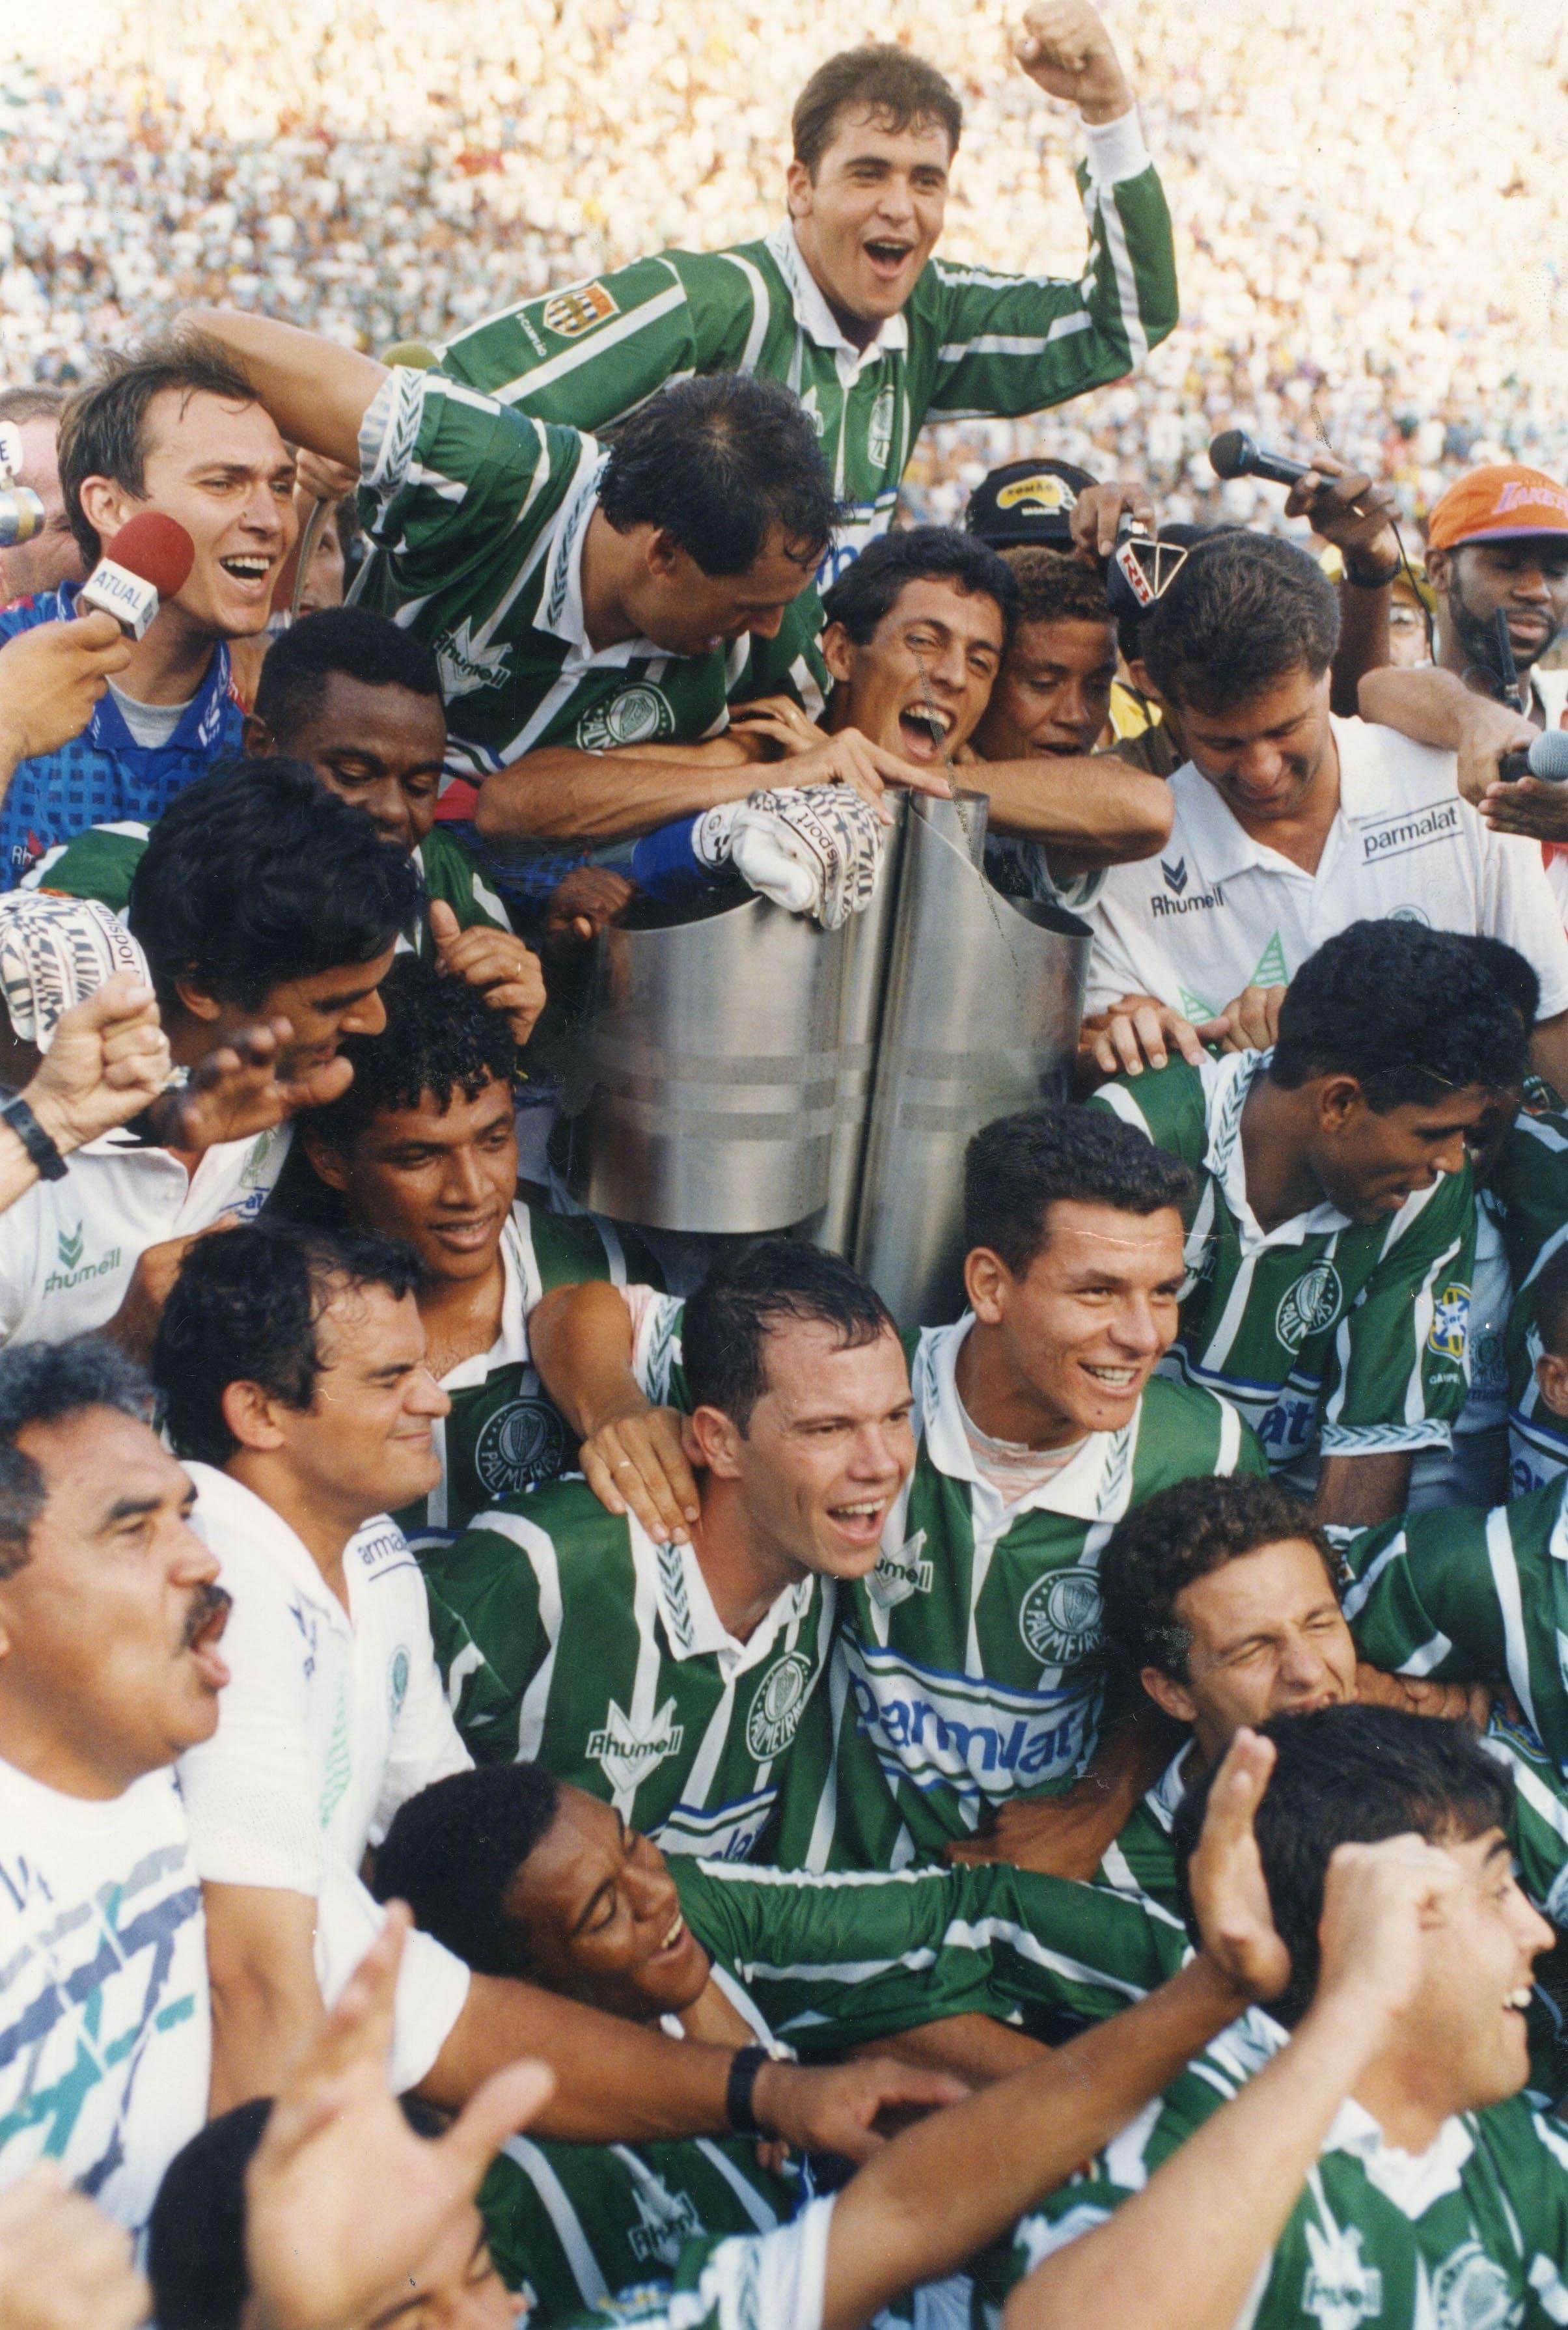 Há 22 anos, Corinthians conquistava o mundo pela primeira vez